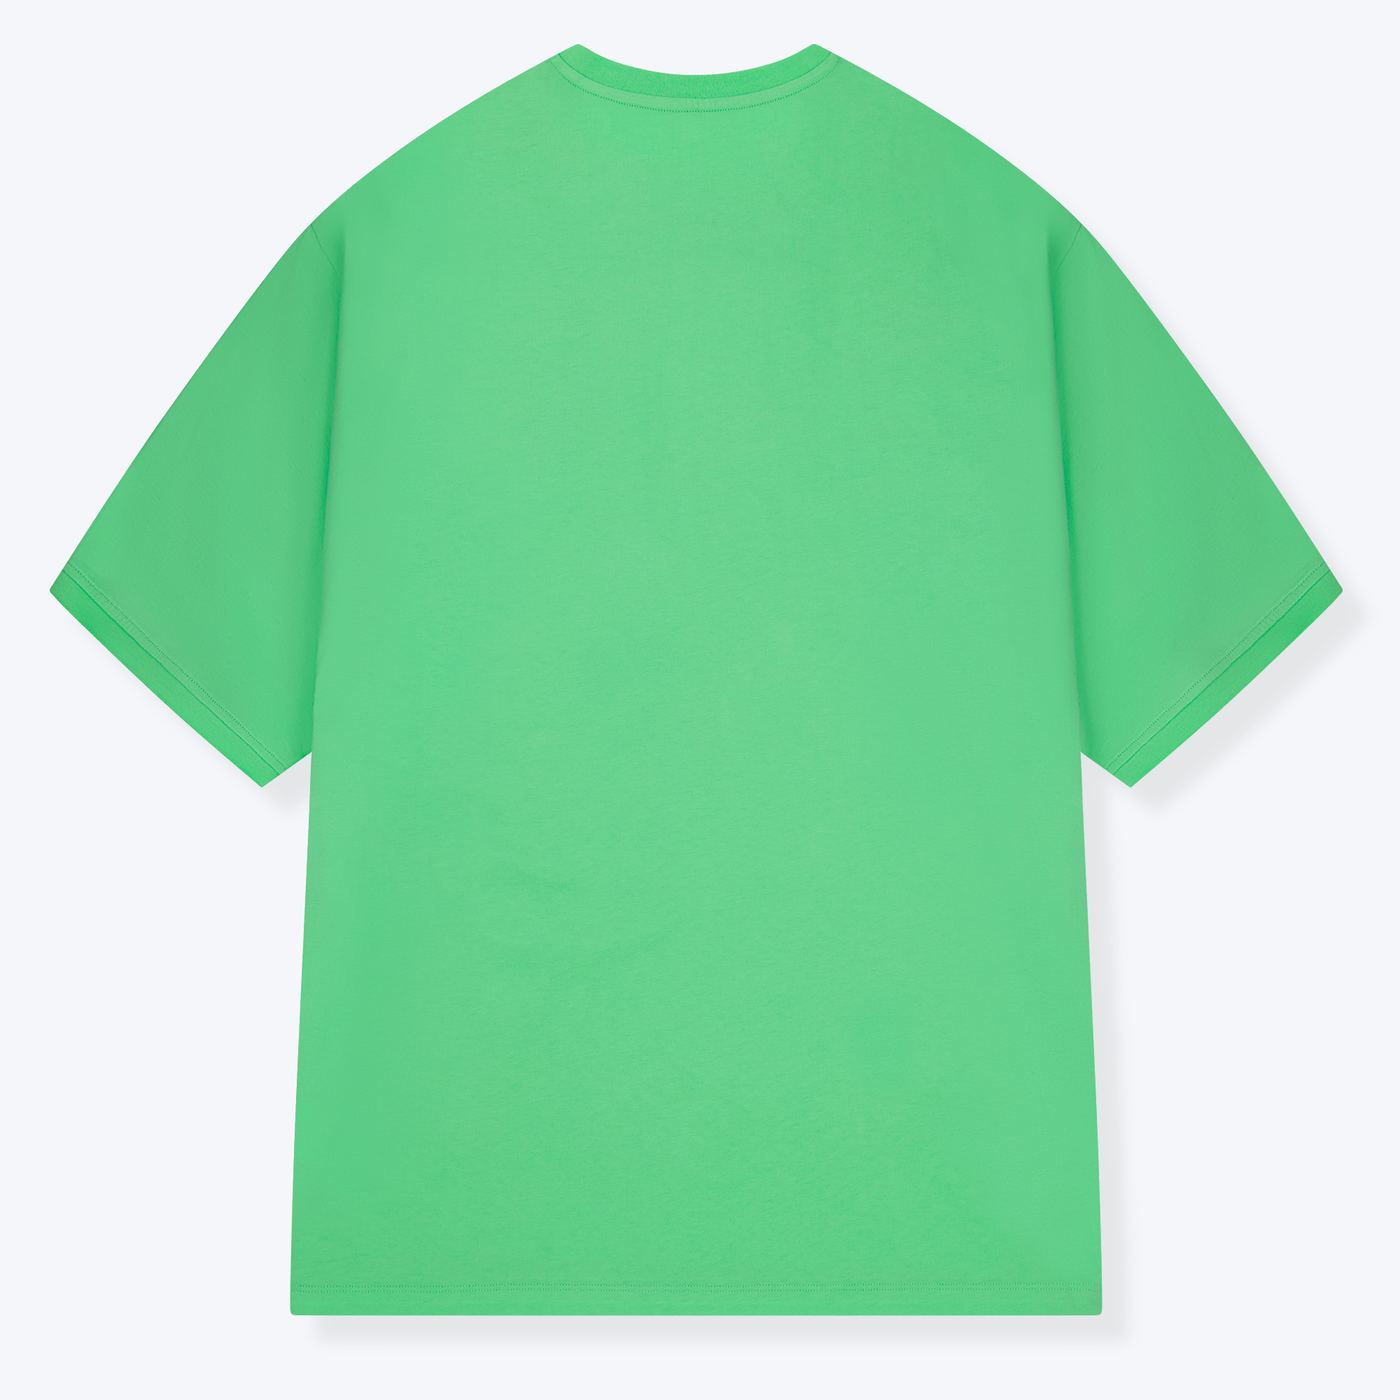 Taschen Beerpong Grantler Shirt grün